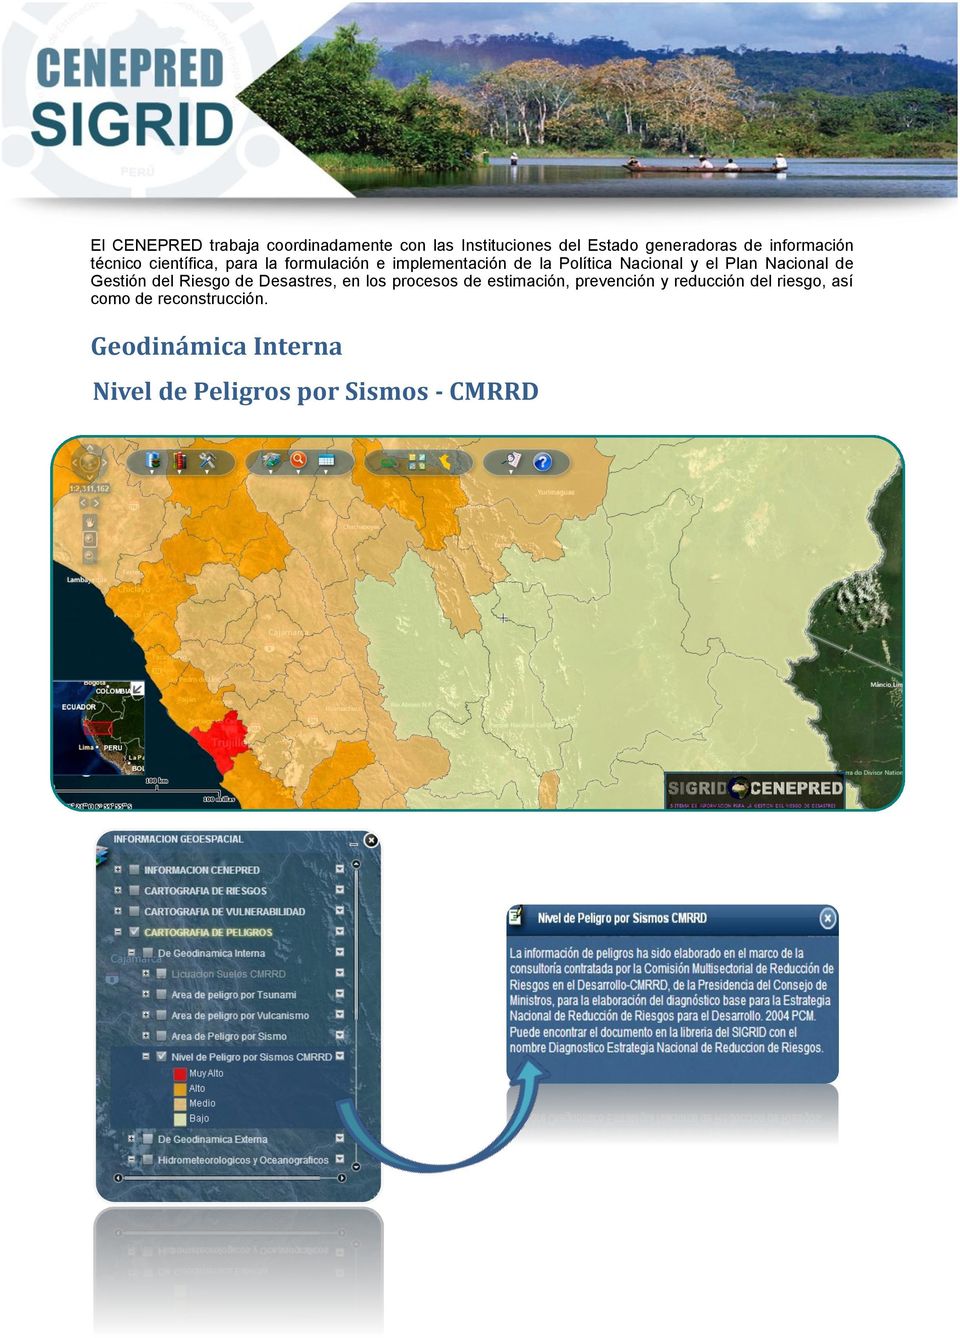 Nacional de Gestión del Riesgo de Desastres, en los procesos de estimación, prevención y